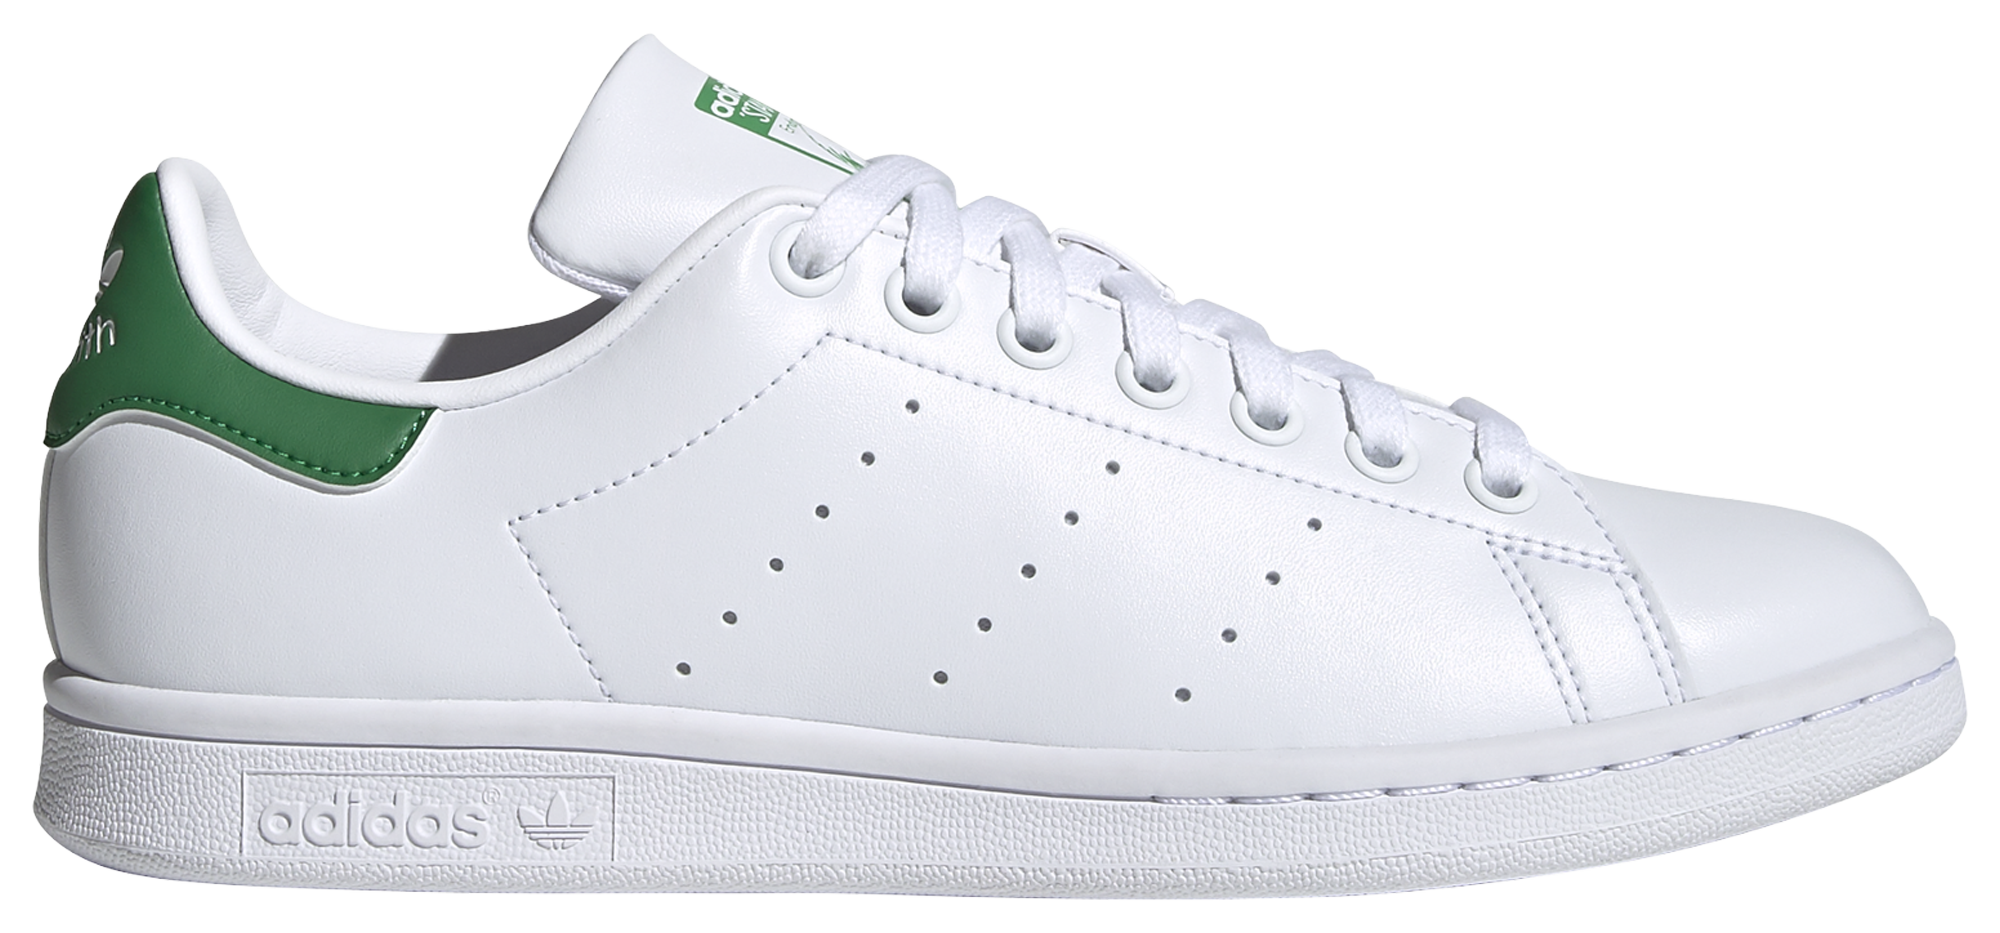 White adidas Stan Smith Shoes, Q47225